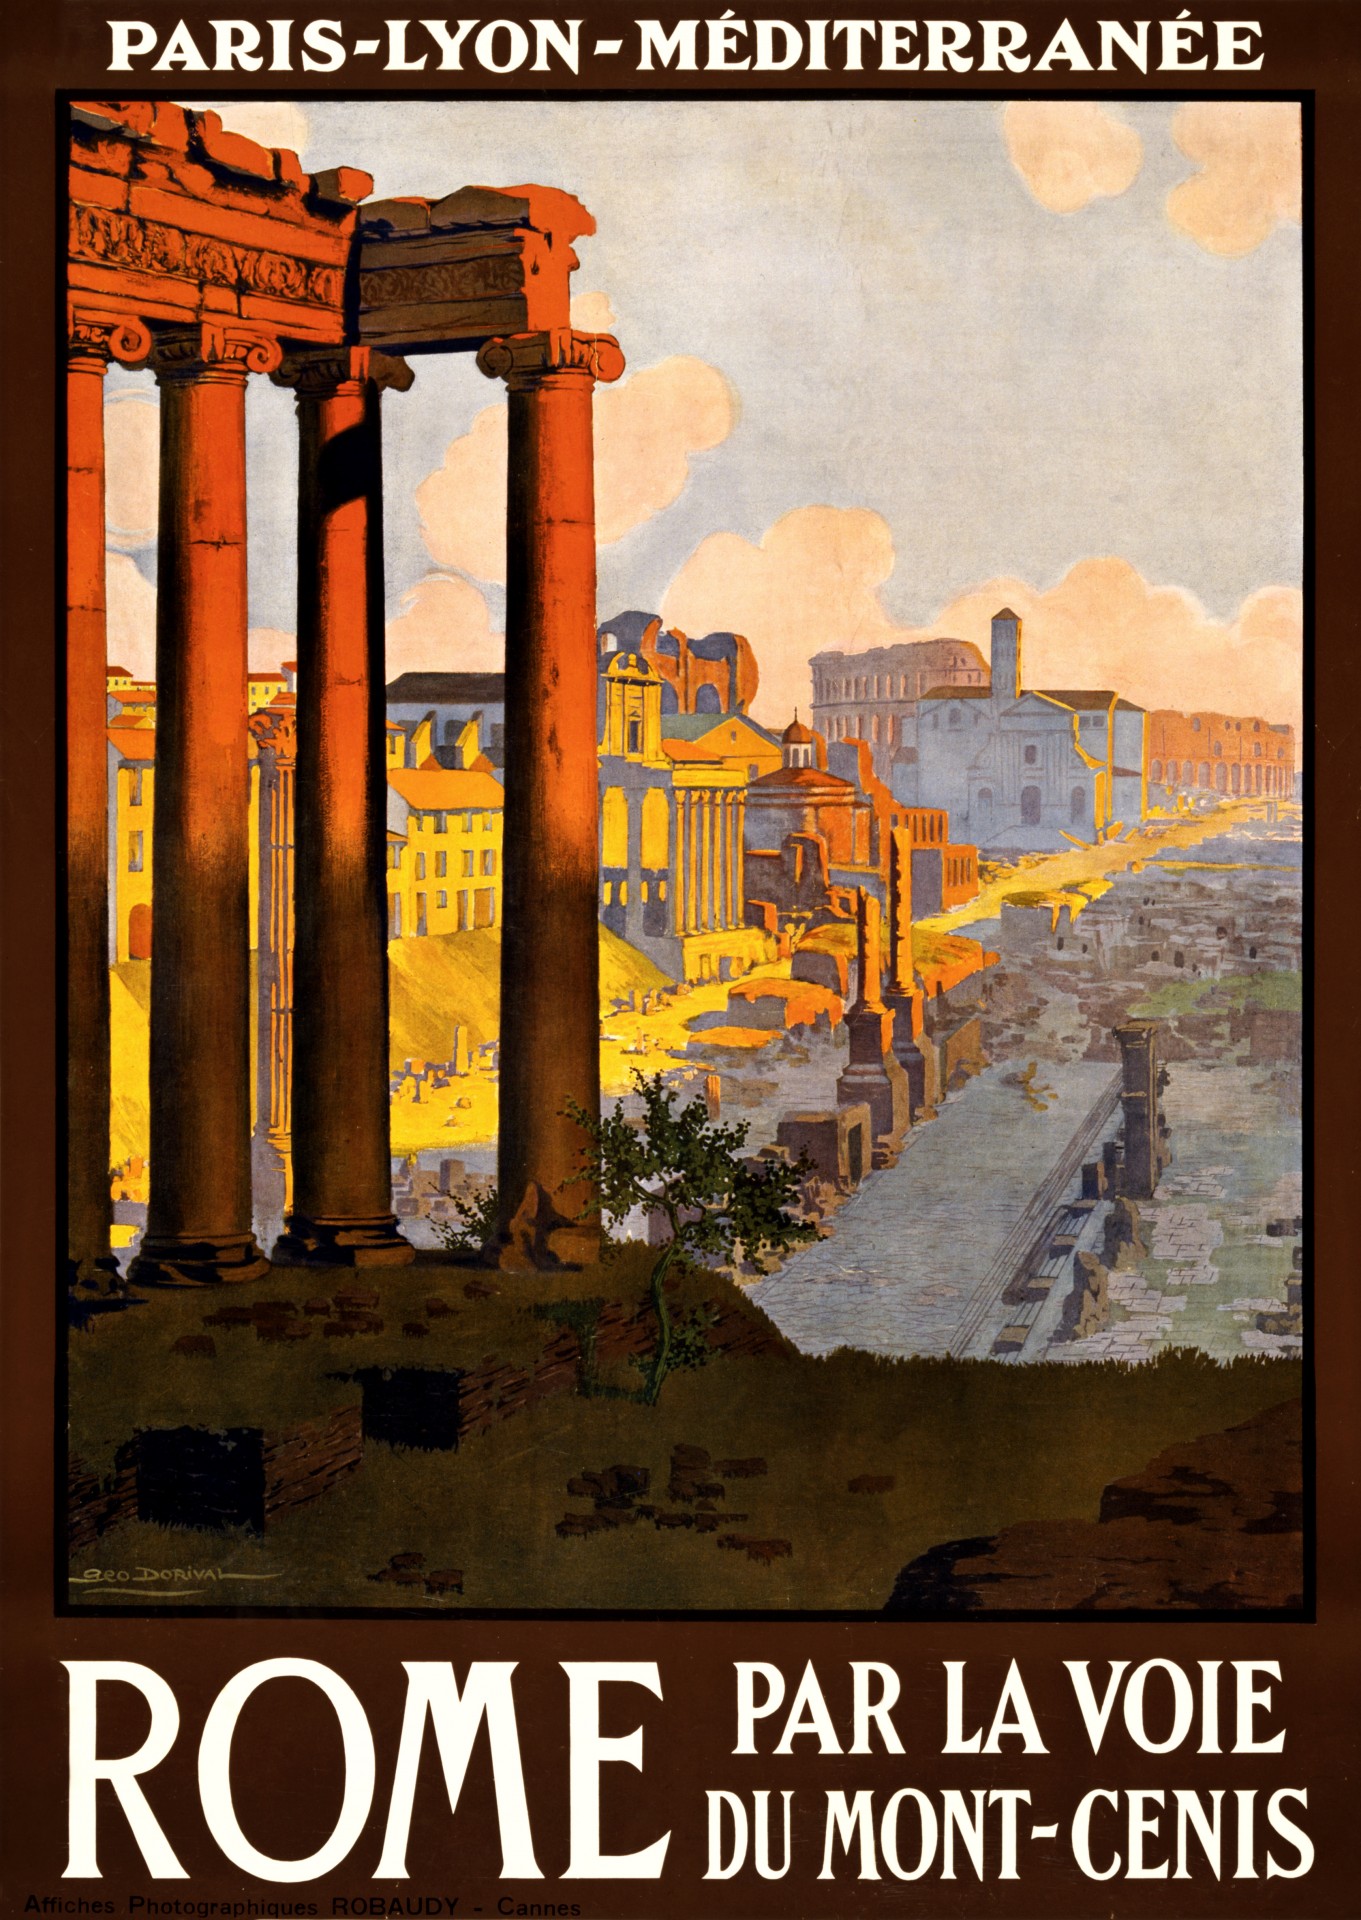 Vintage Rome cestovní plakát